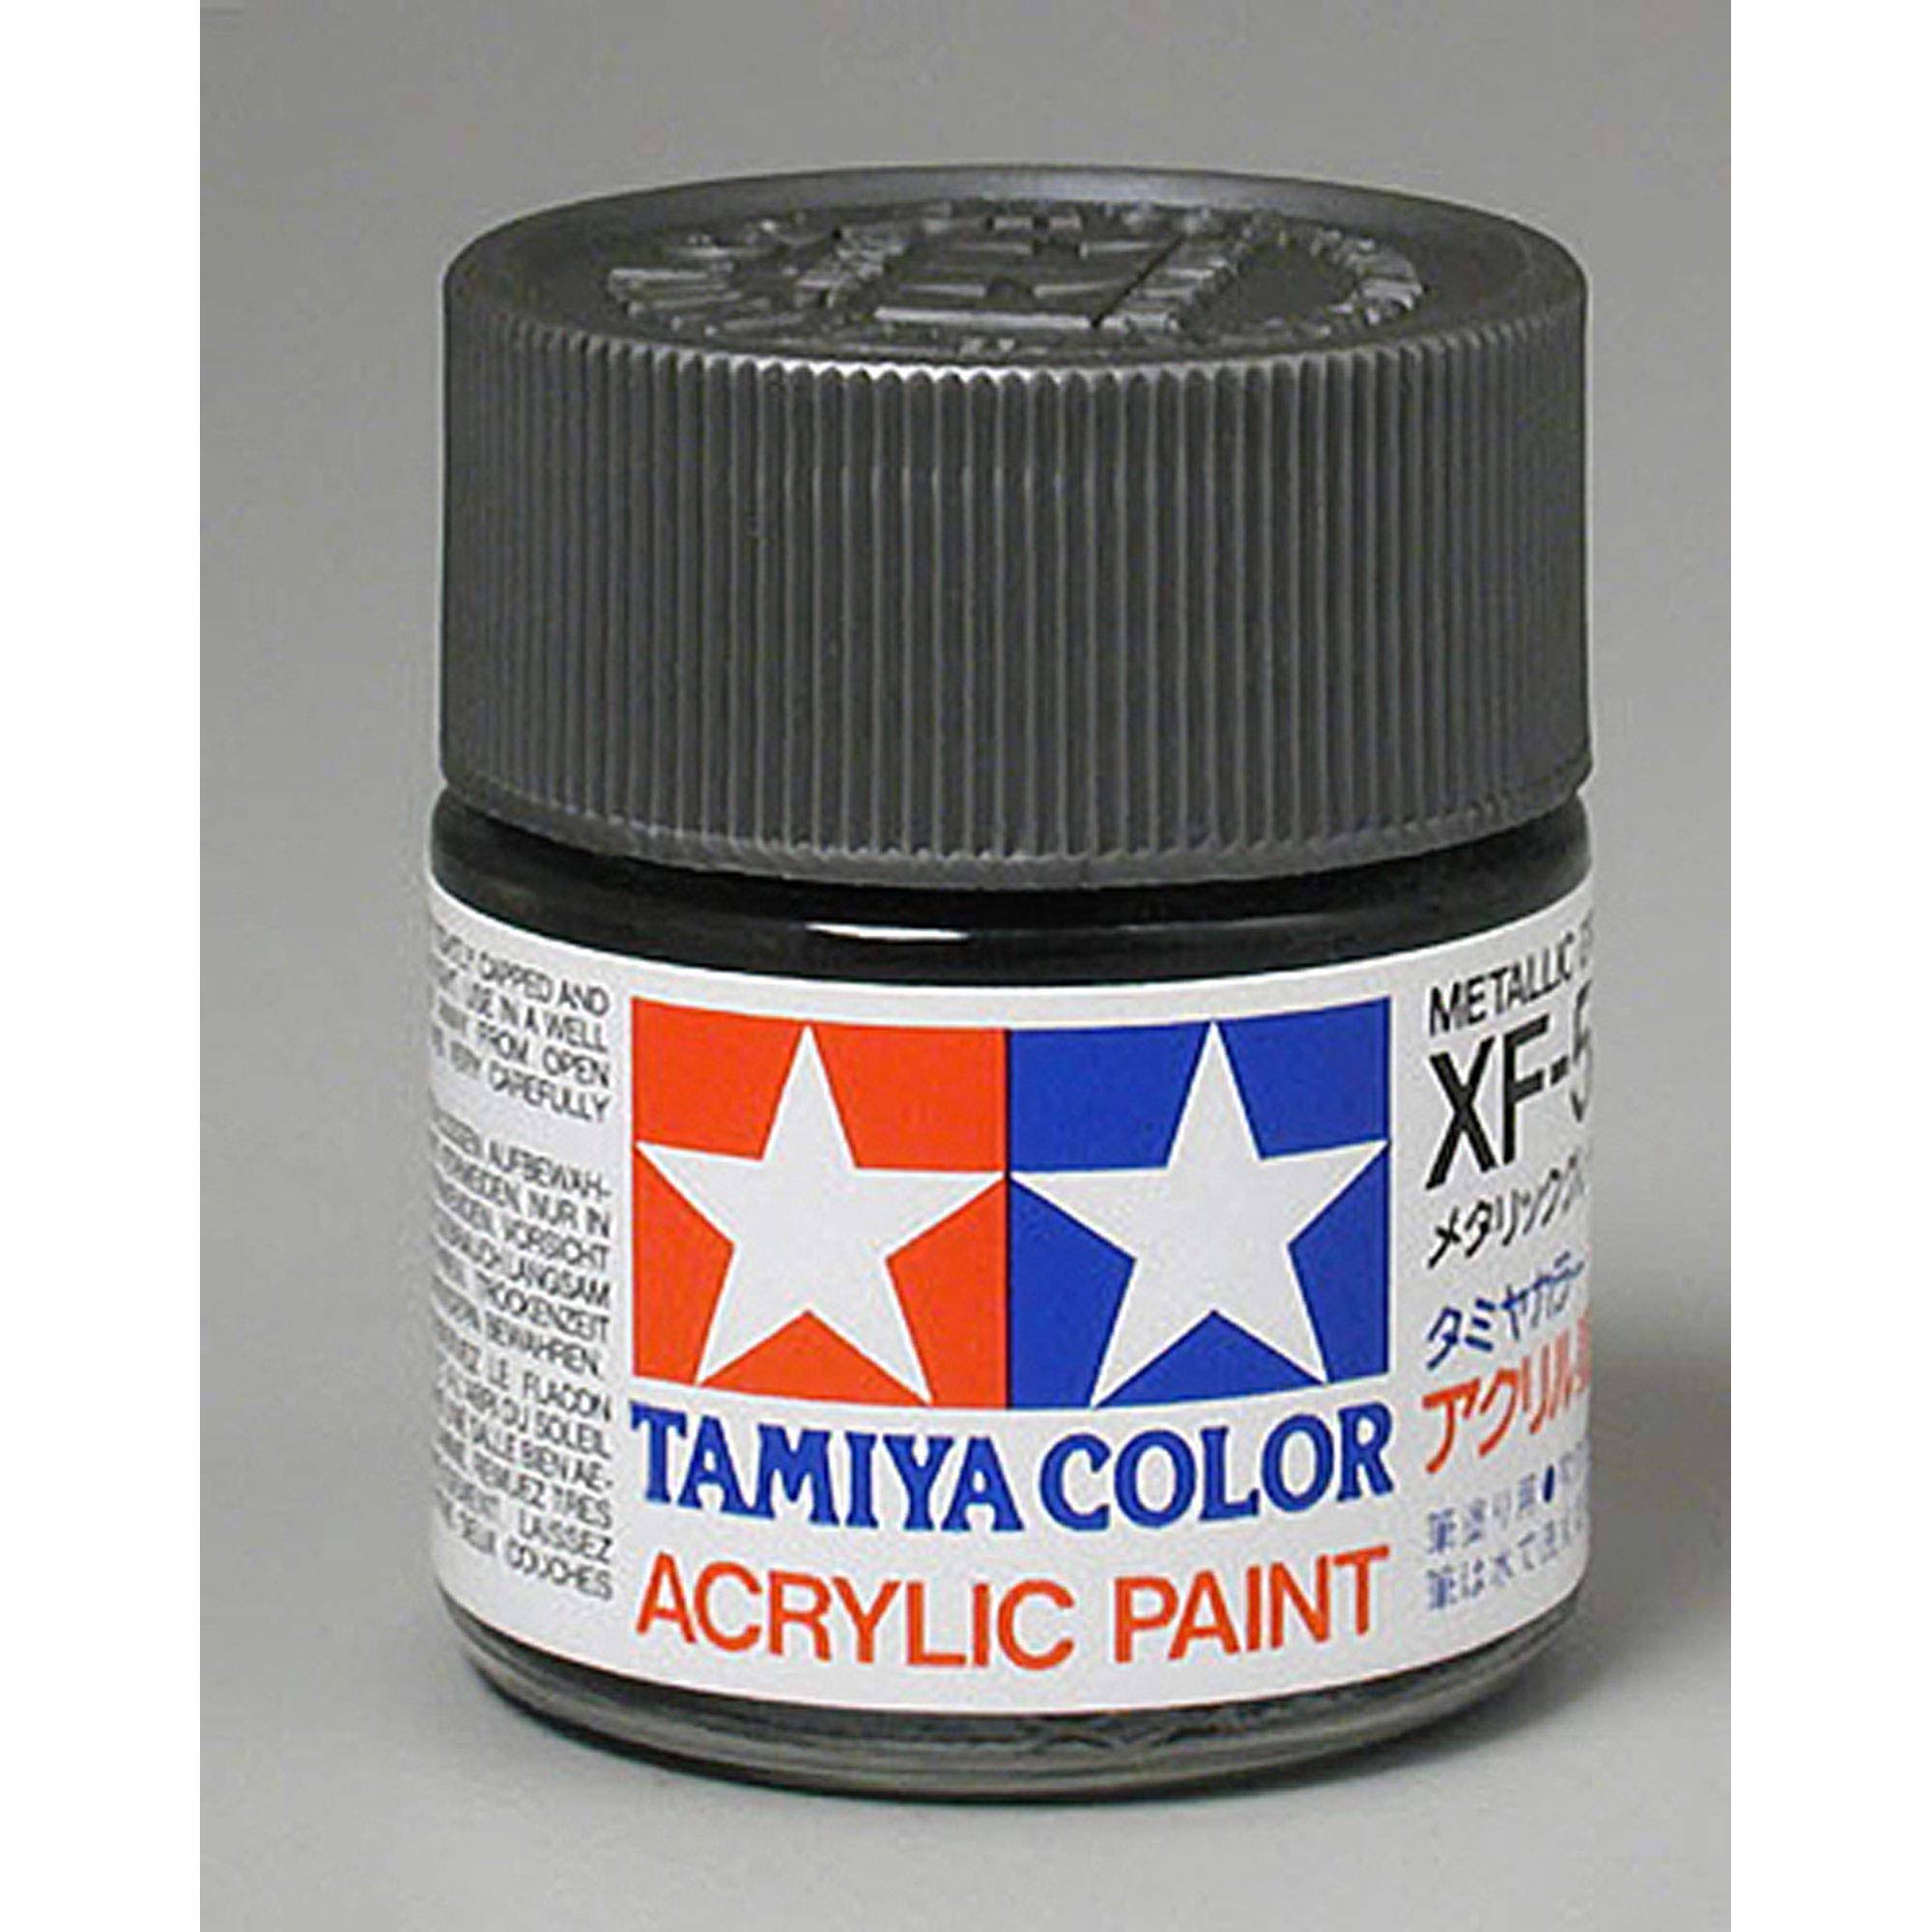 Tamiya Acrylic XF56, Flat Metal Gray TAM81356